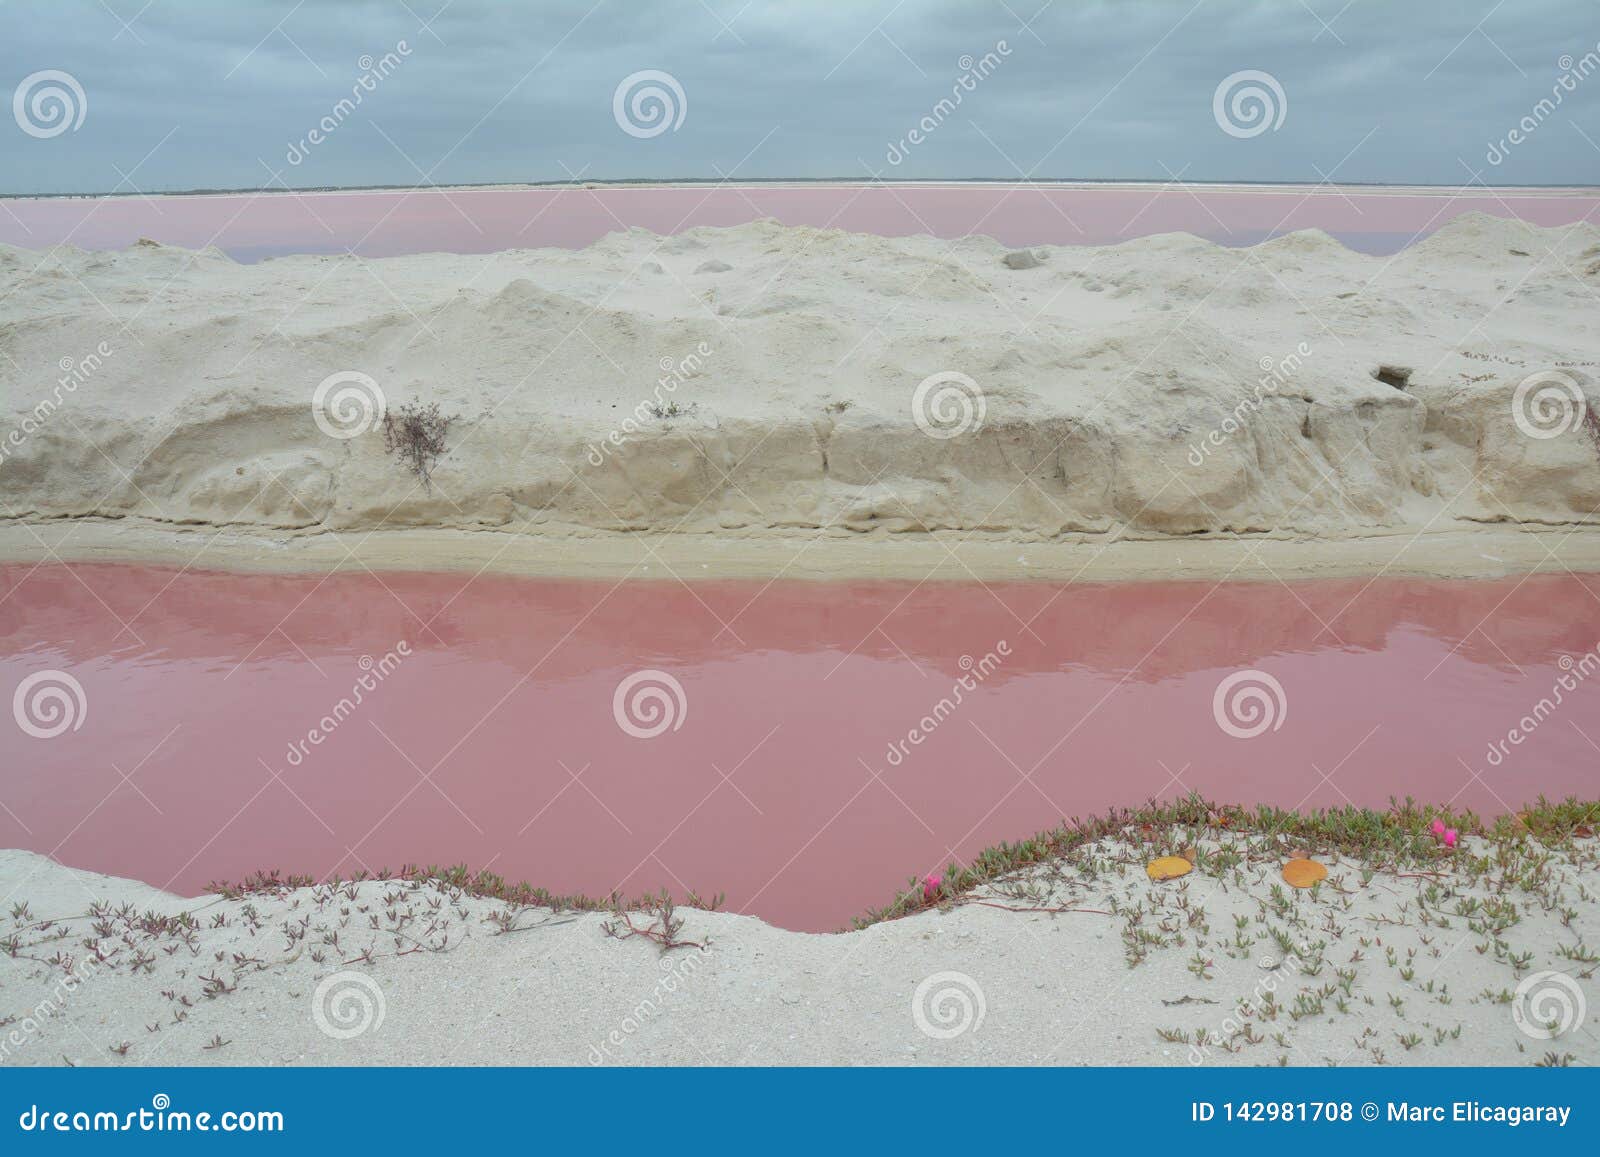 pink lake las coloradas yucatan mexico